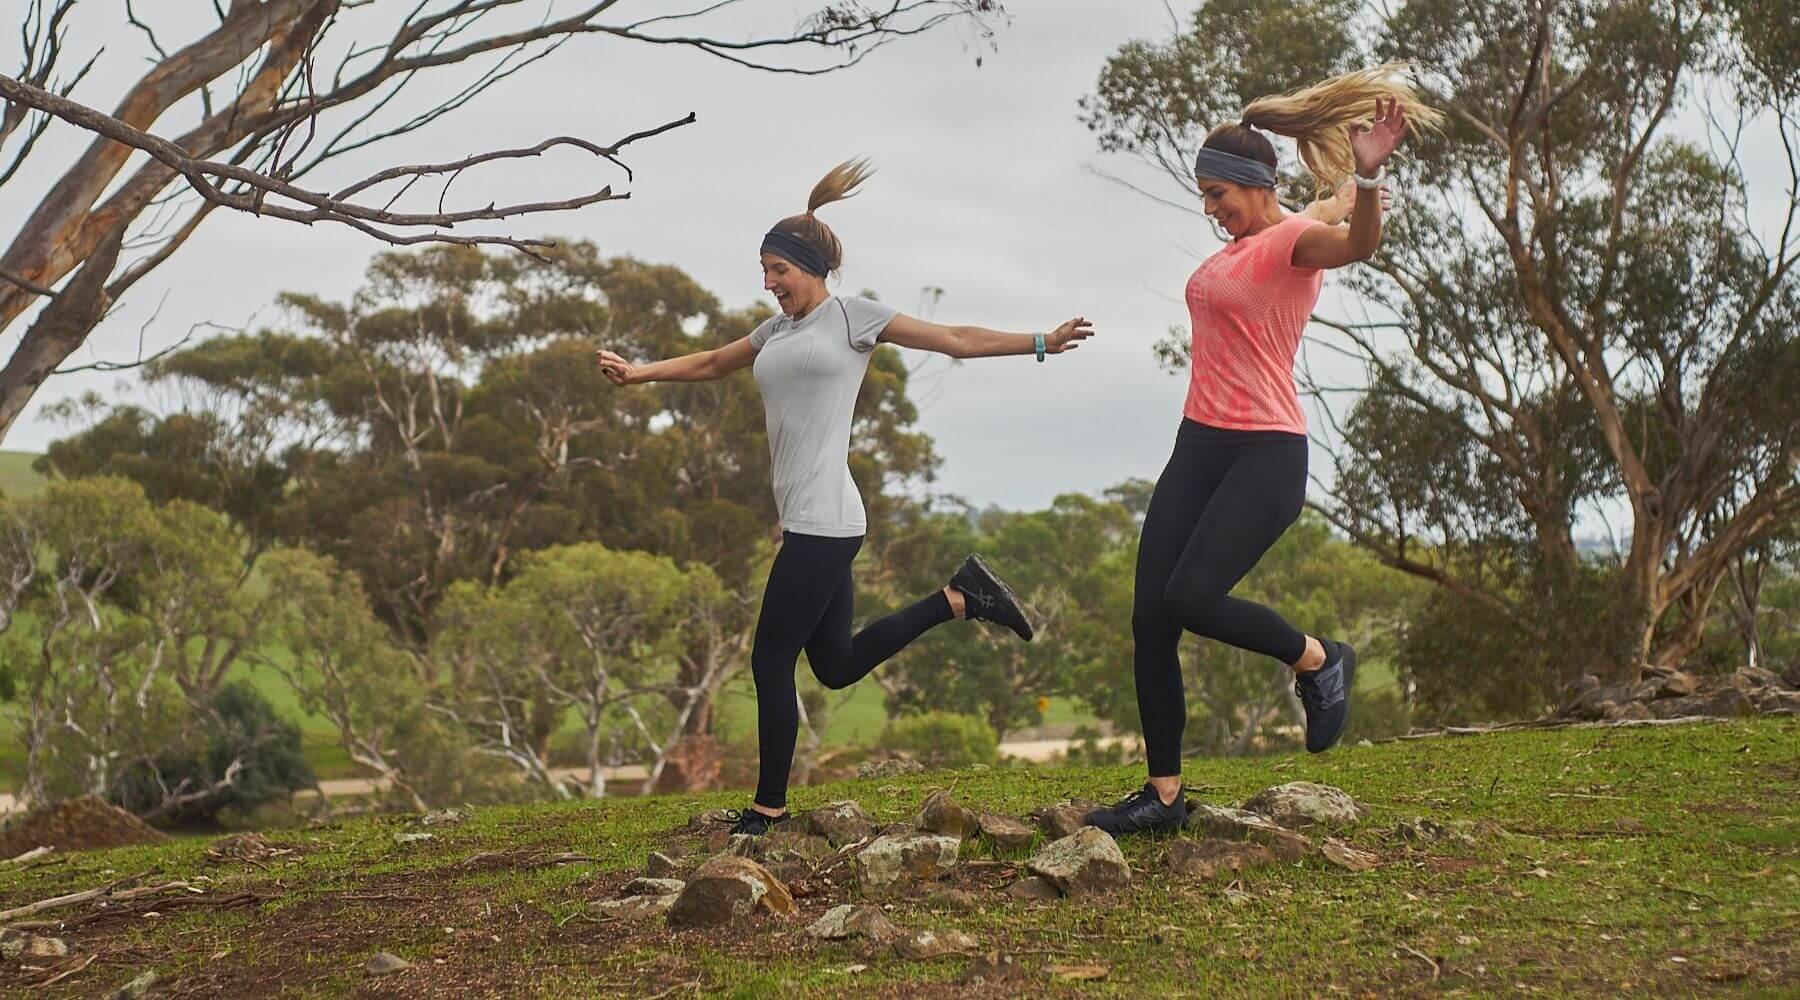 2 ladies trail running wearing merino wool headbands